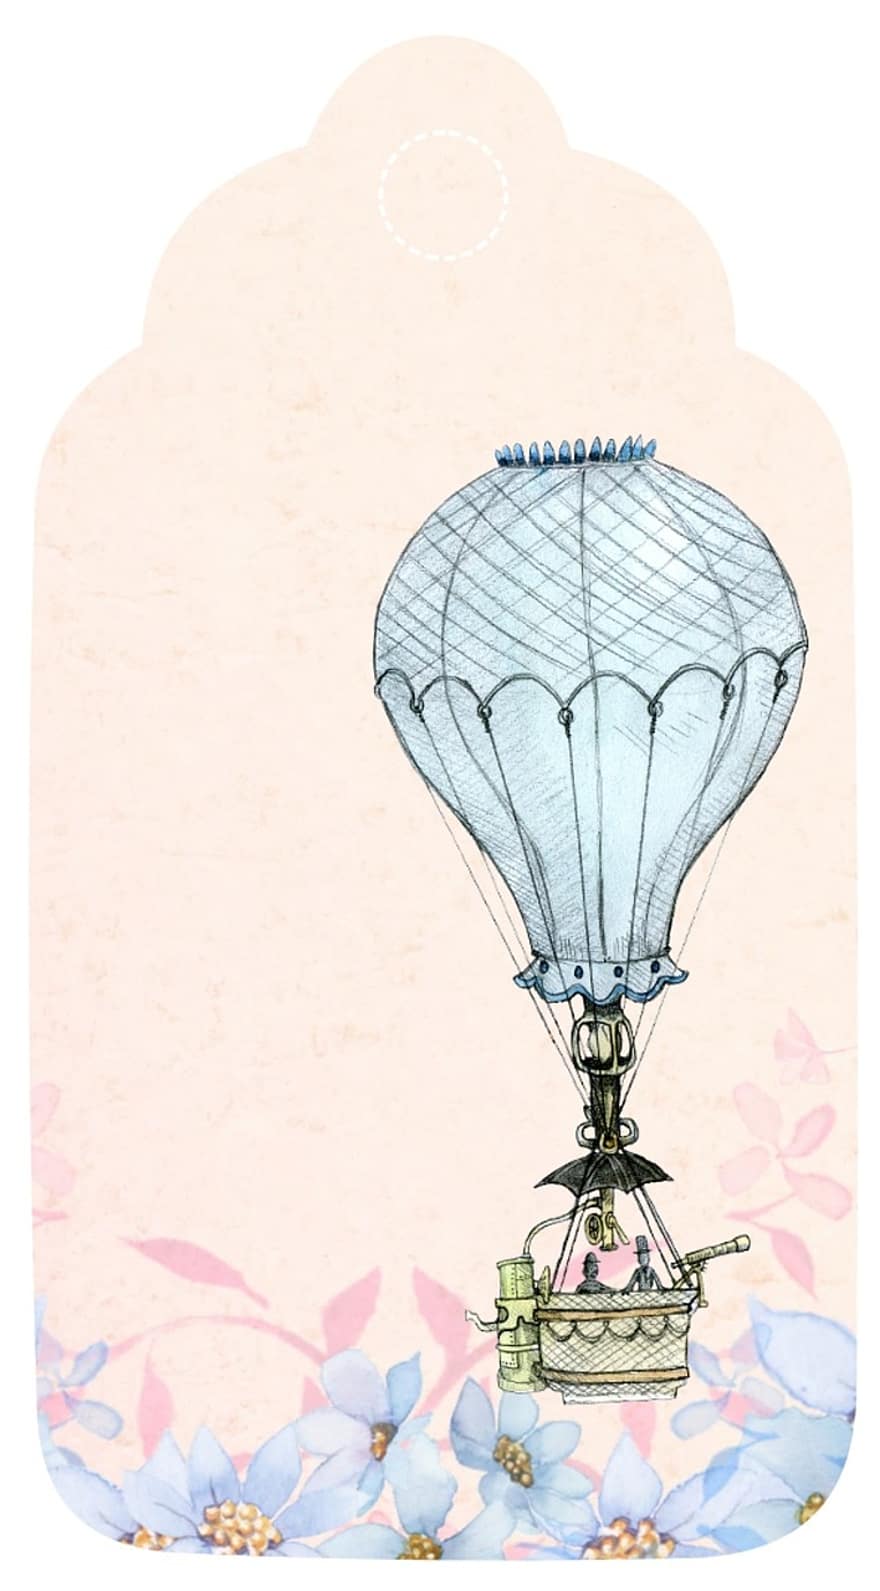 globus d'aire calent, etiqueta, romàntic, bloc de notes, rosa, blau, ocell, vintage, salutació, decoració, targeta